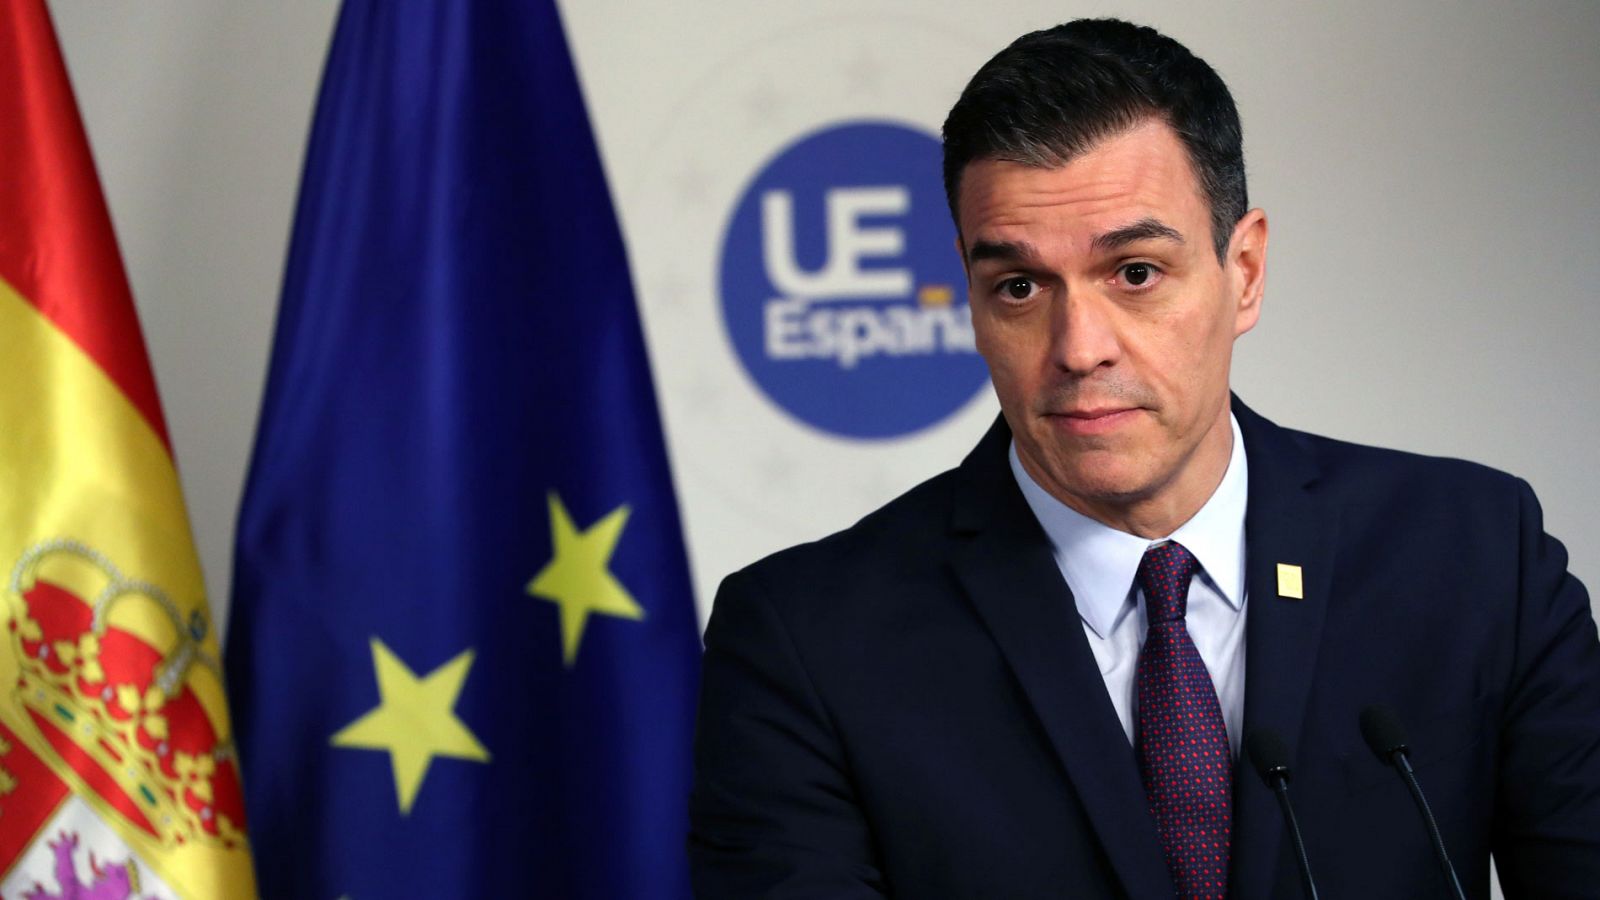 Fracasa la cumbre presupuestaria de la UE con una propuesta "decepcionante" para España